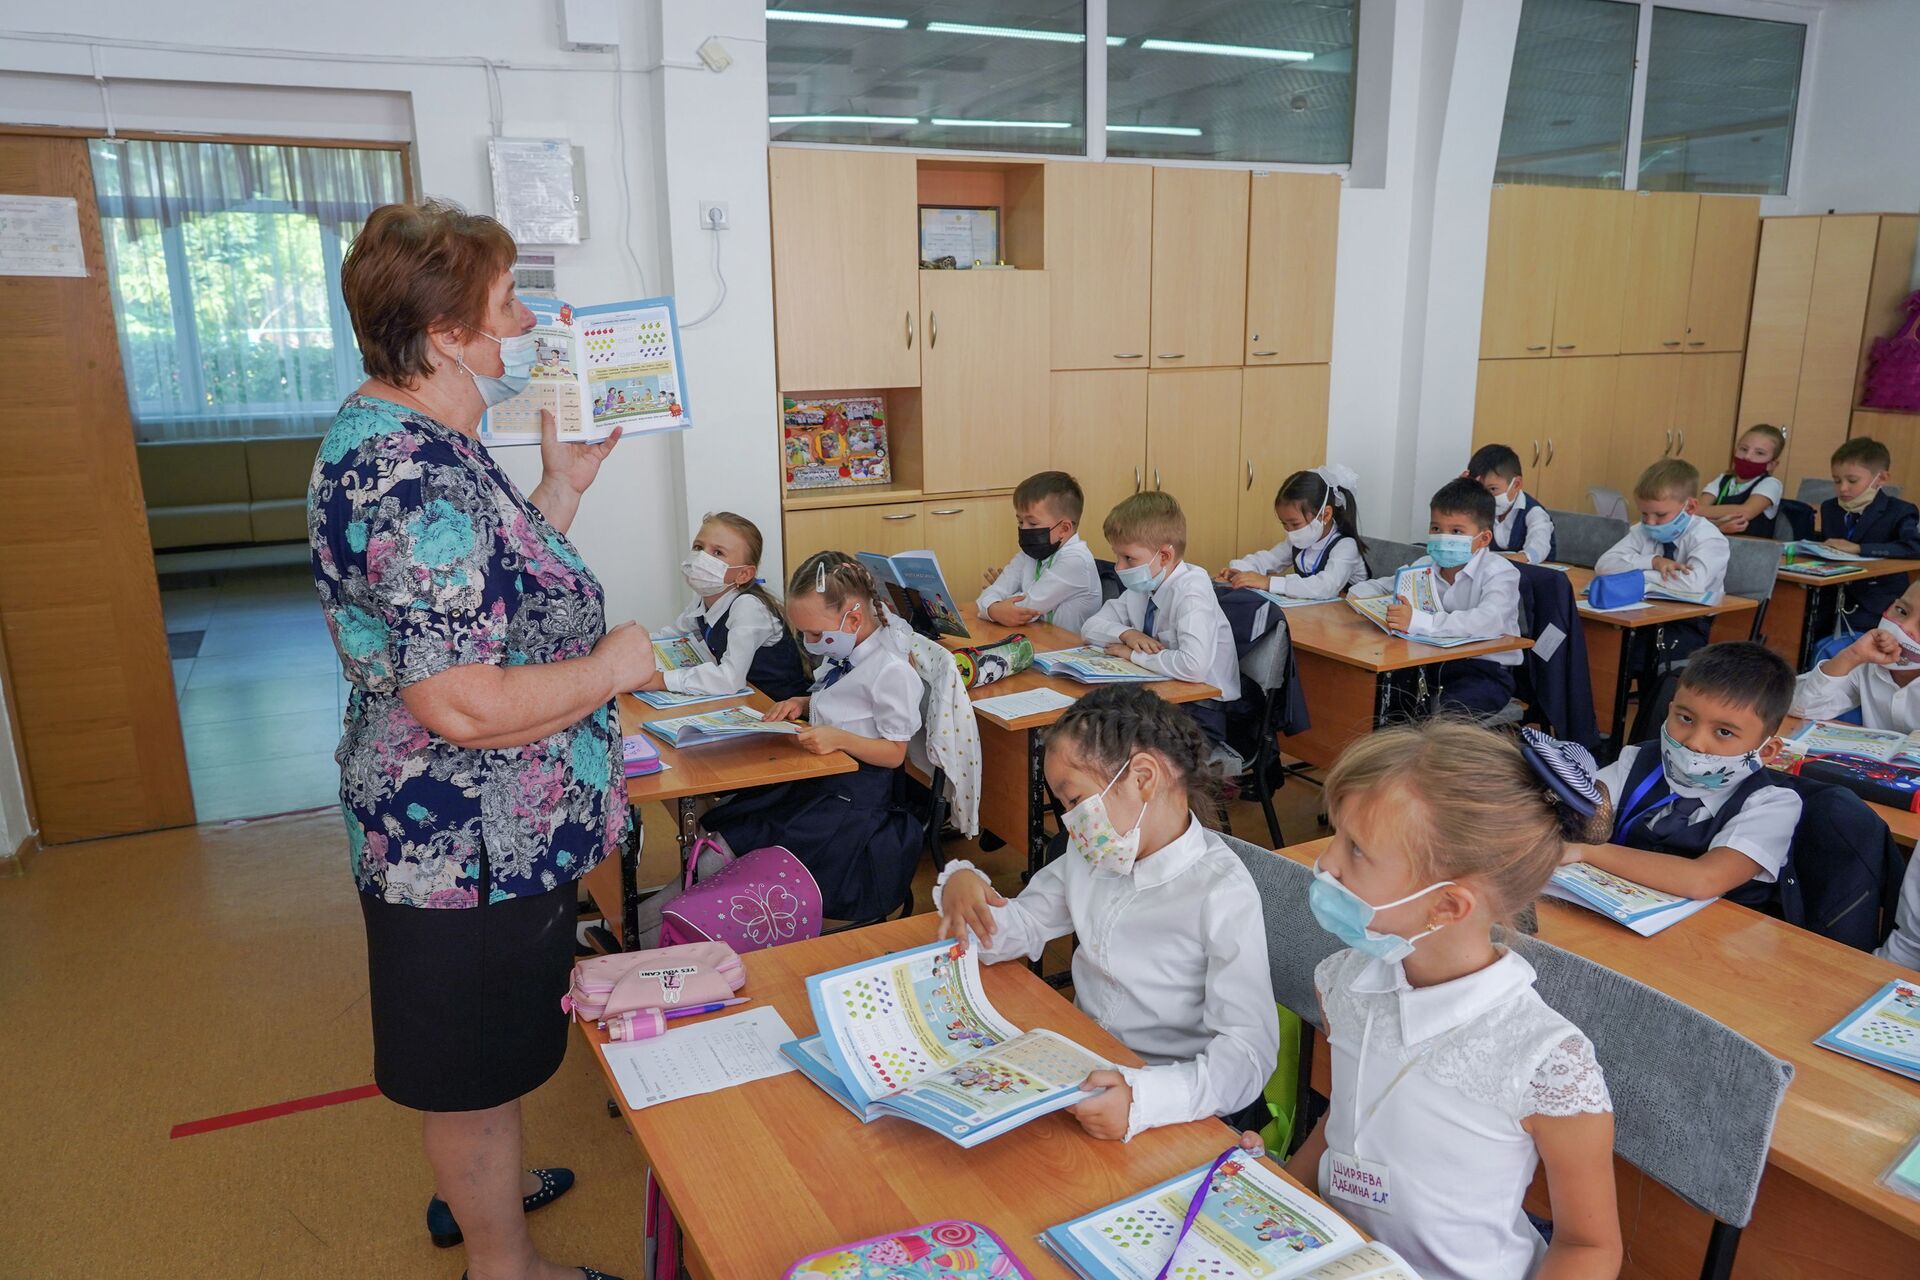 Учитель с микрофоном, дети в масках: как COVID изменил школьные будни - Sputnik Казахстан, 1920, 06.09.2021